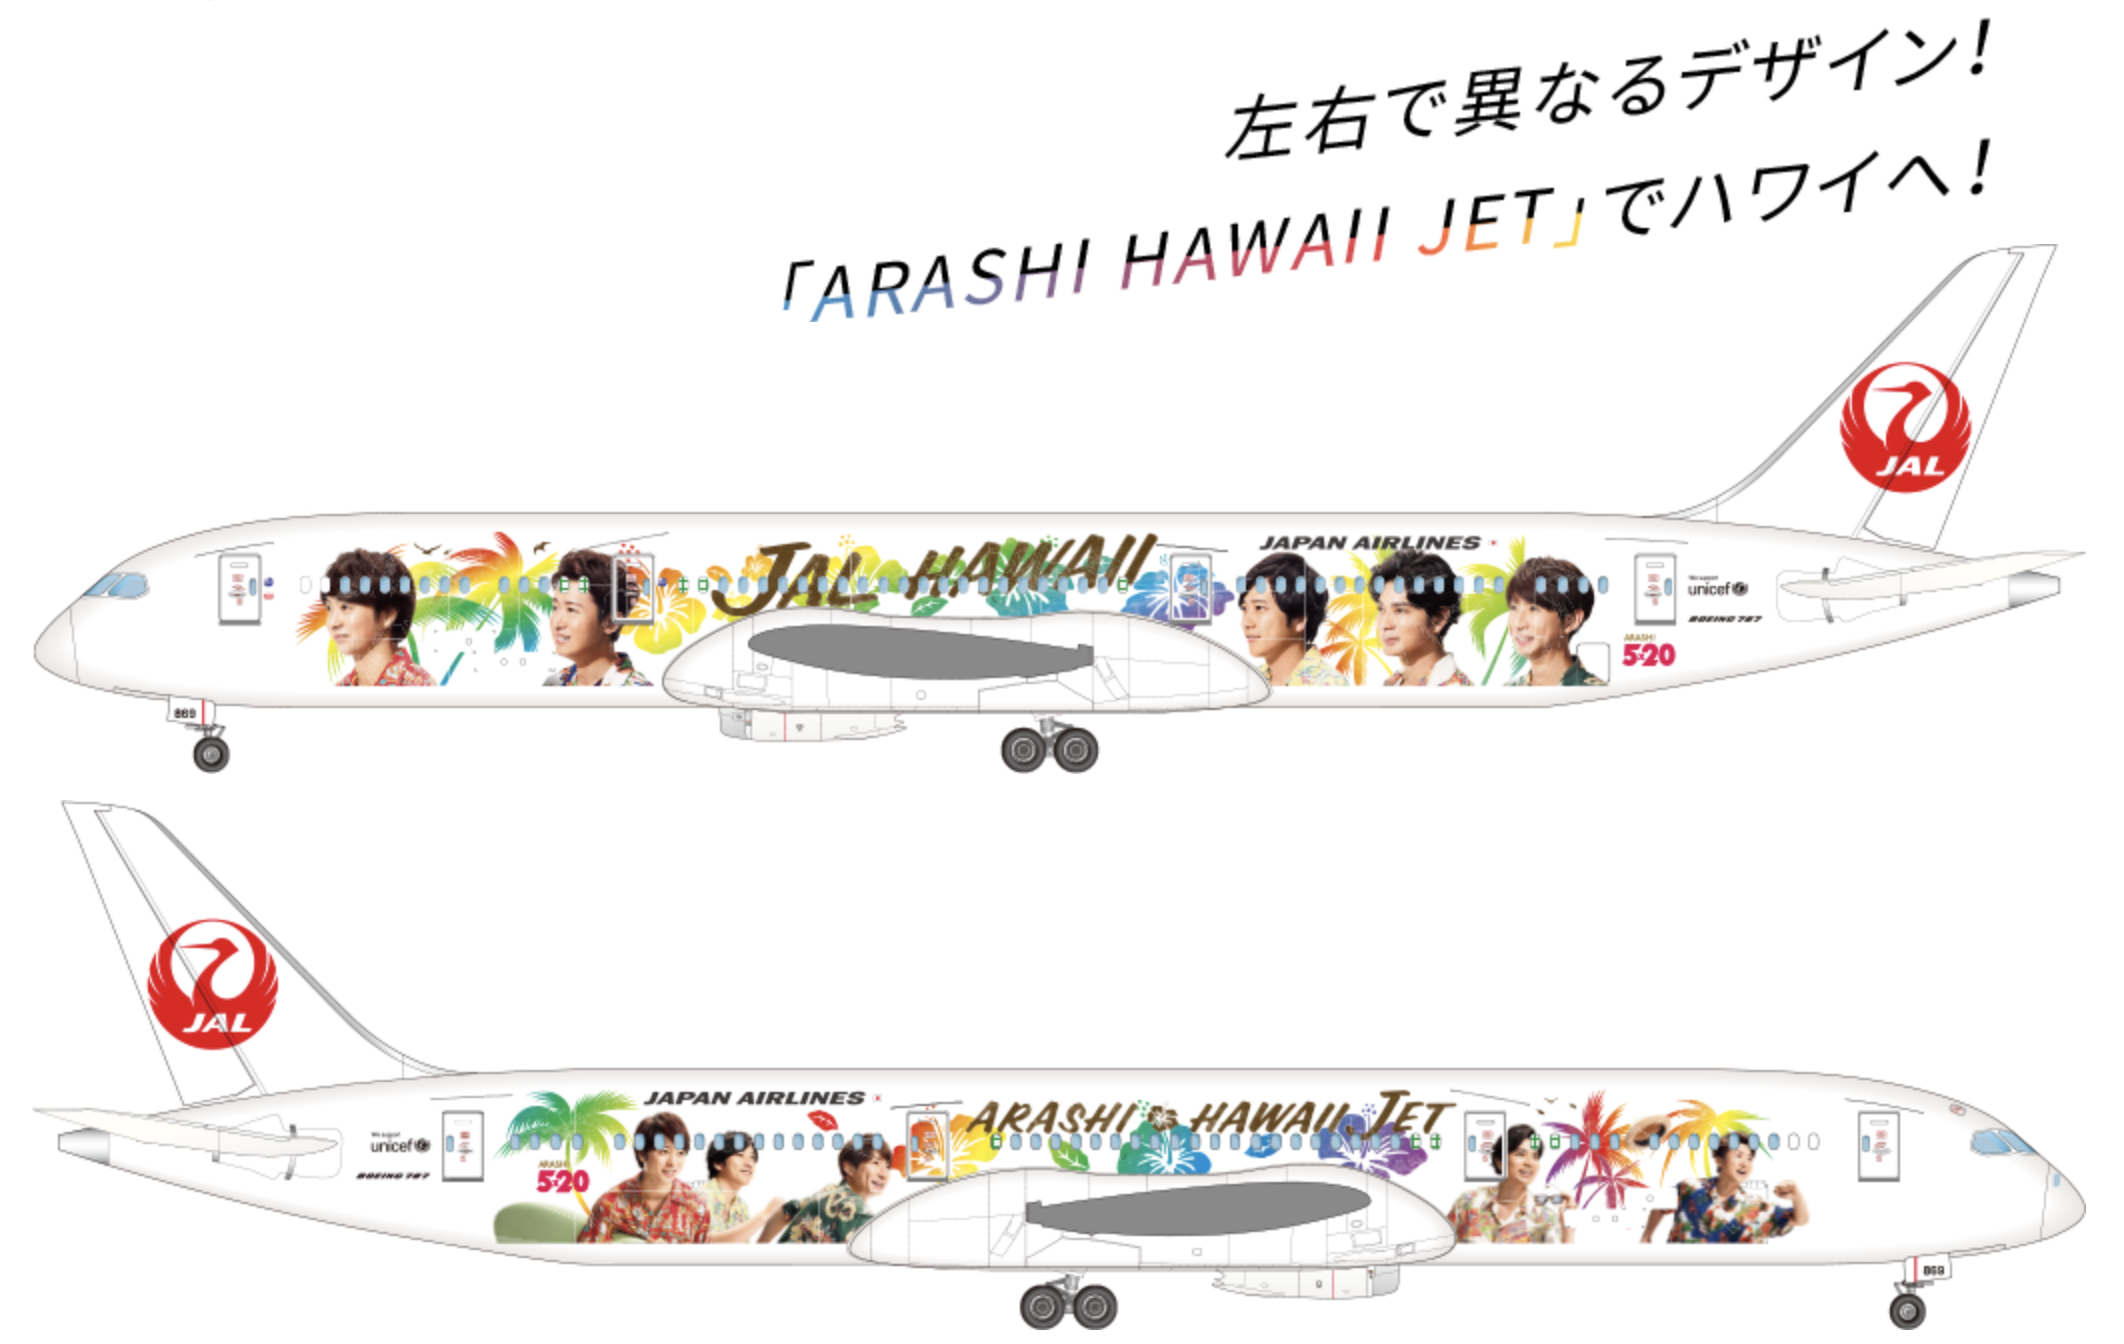 Jalハワイ嵐ジェット運航情報 Arashi Hawaii Jet はどこで見られる 運航スケジュールをほぼ毎日更新 クマフラ